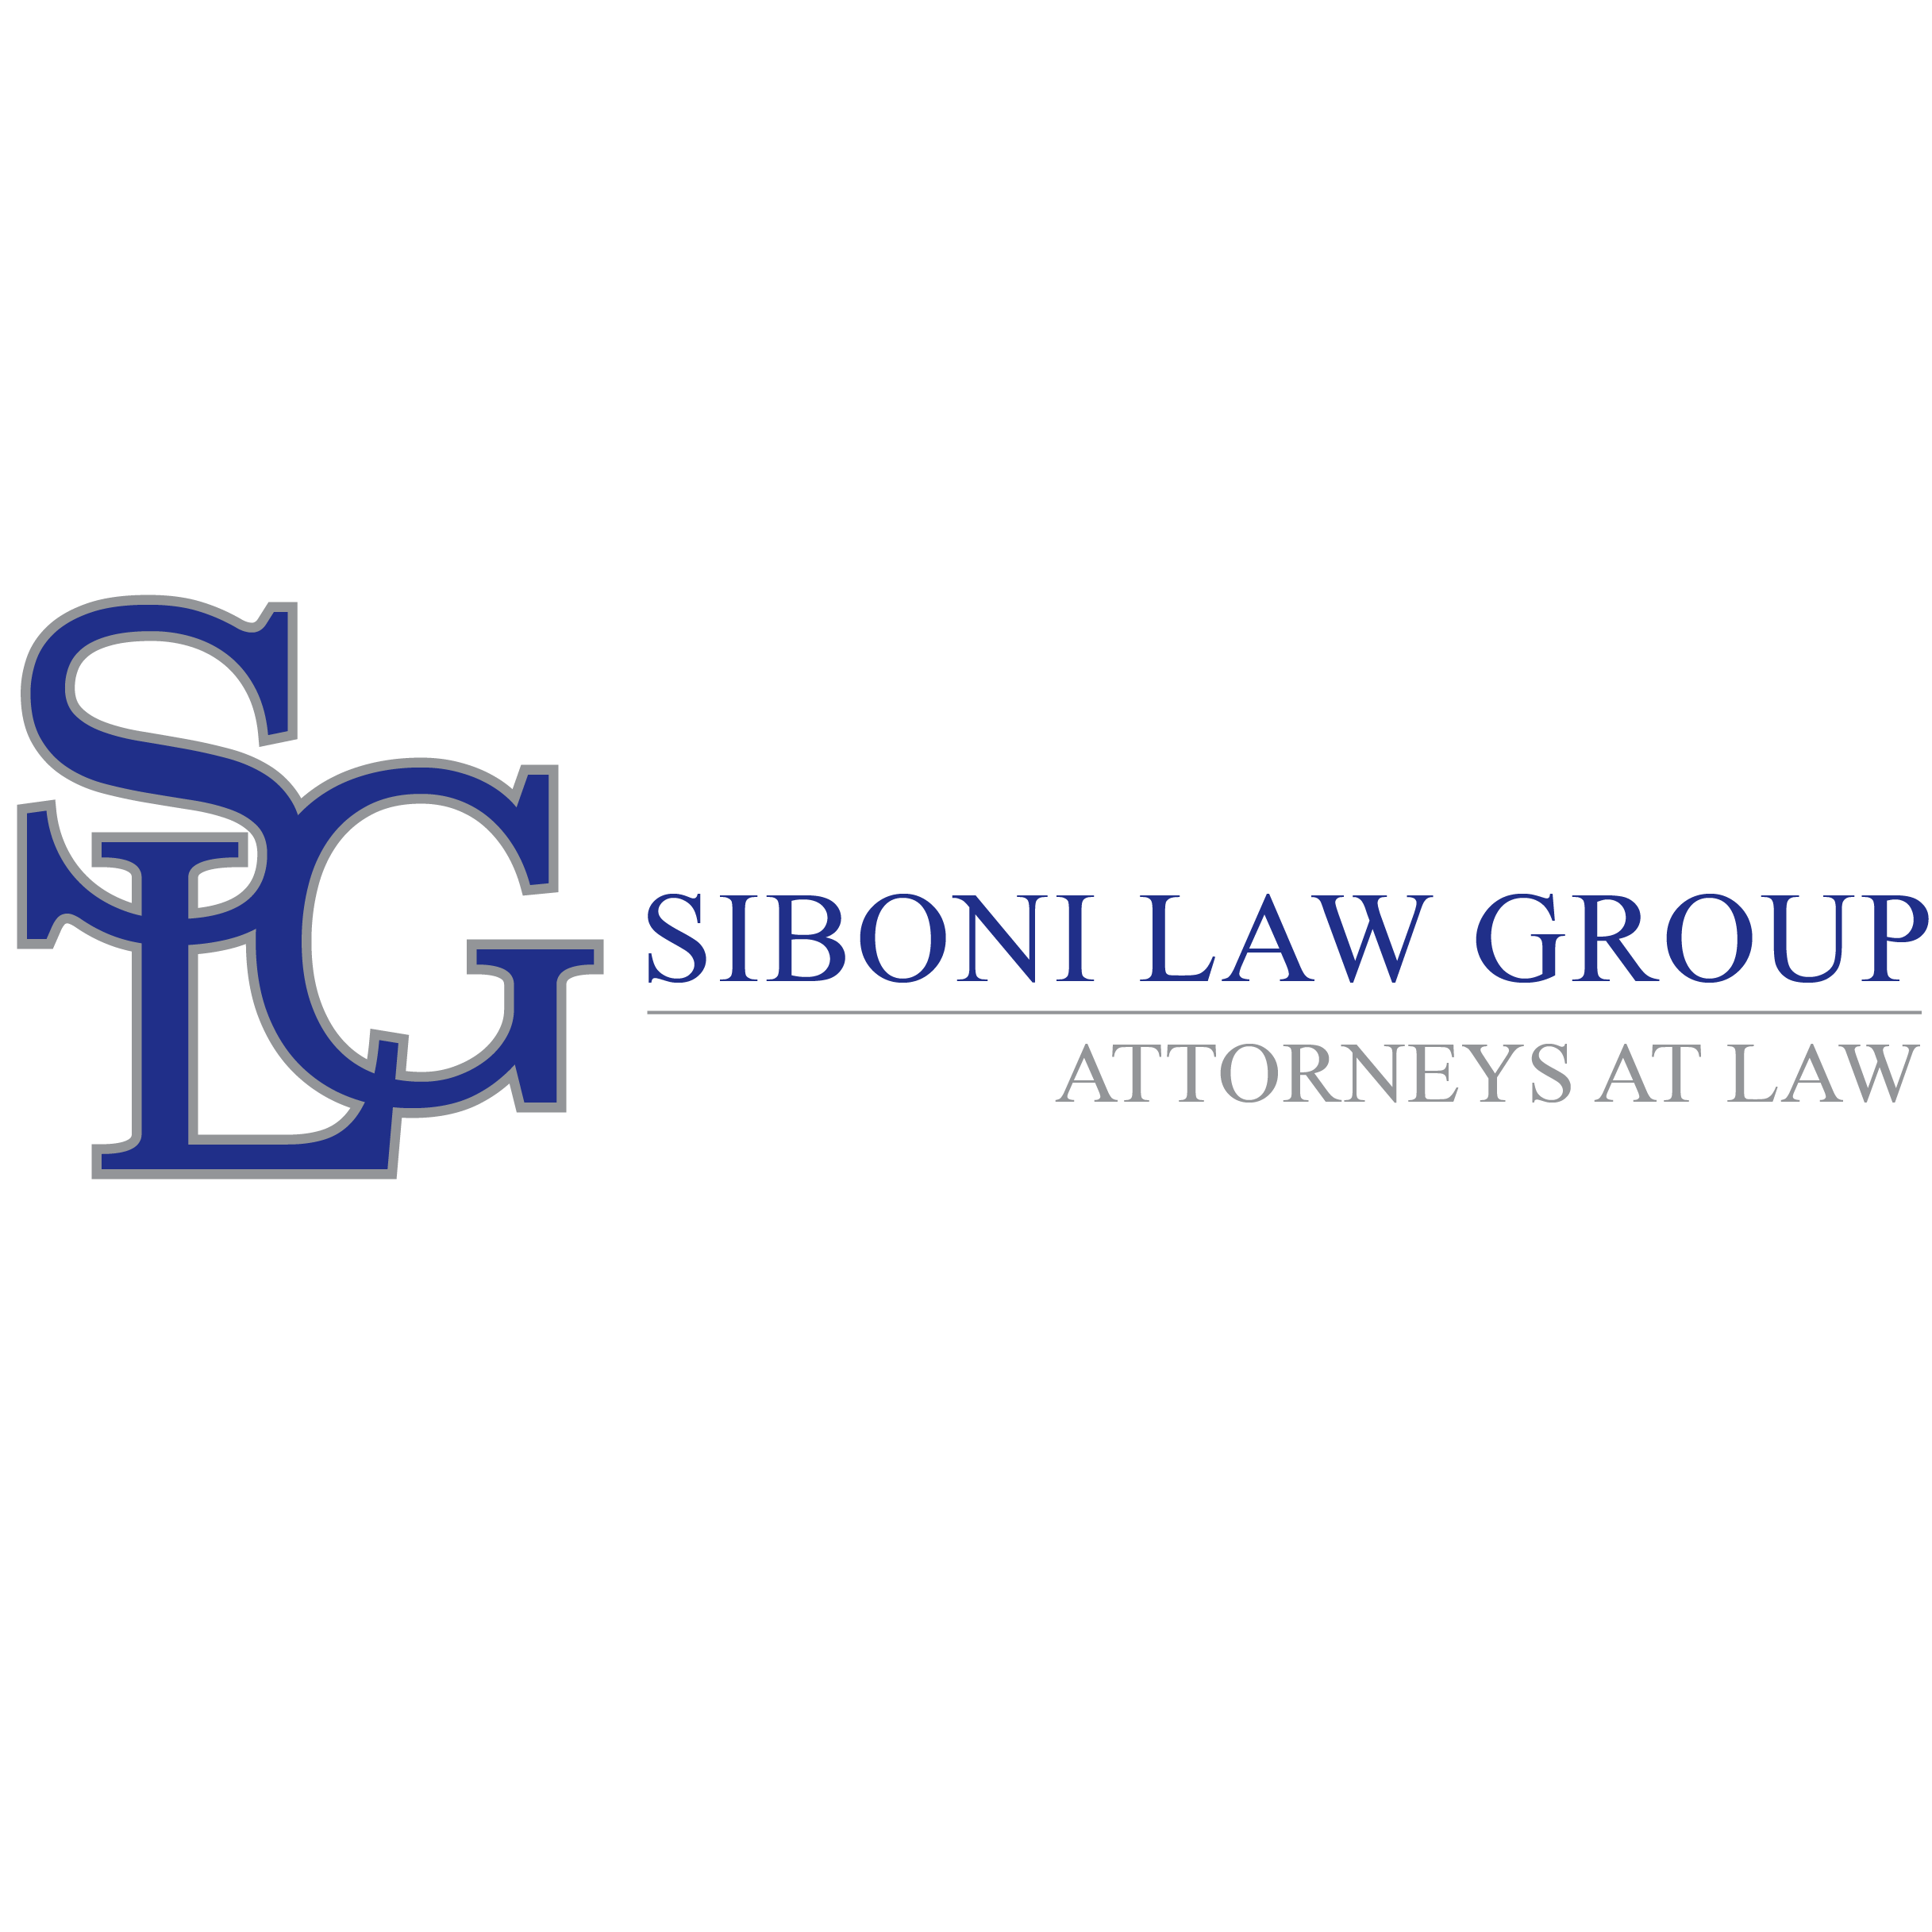 Siboni Law Group